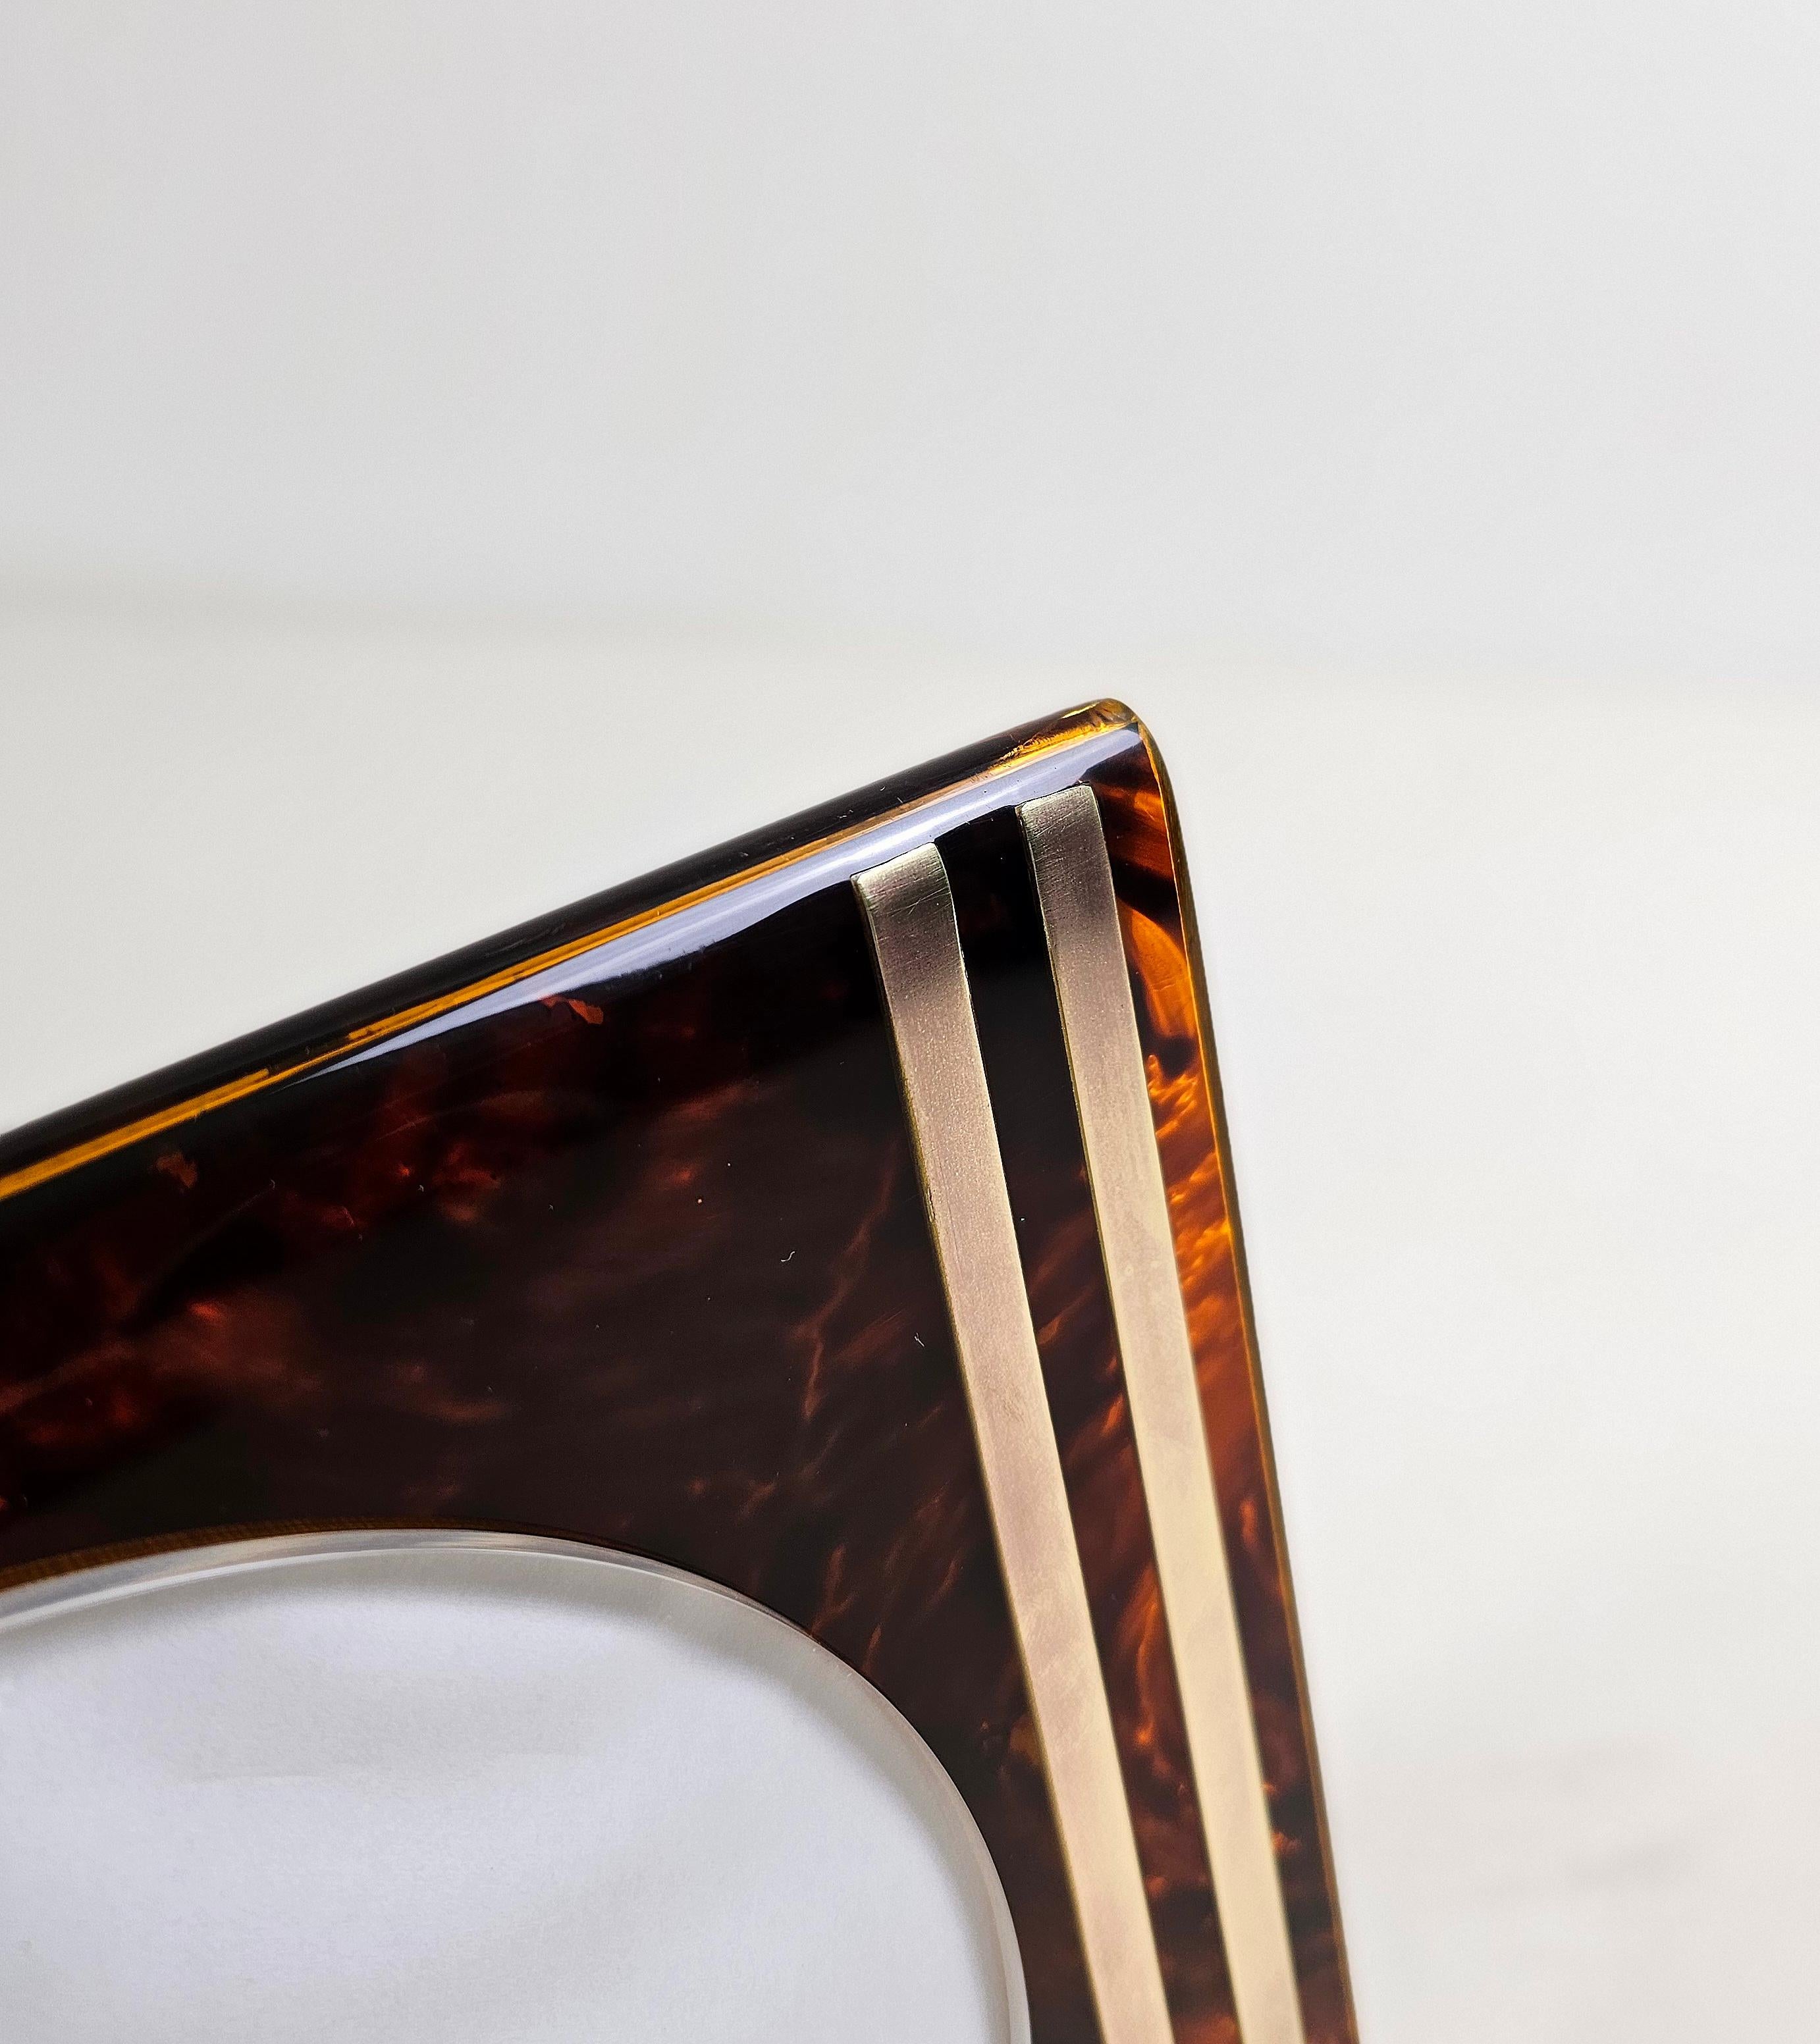 Rechteckiger Rahmen aus Lucit und Messing, entworfen und hergestellt in Italien von Team Guzzini. MATERIAL Lucite, eine Art Acrylharz, das für seine Transparenz bekannt ist und traditionell für Luxusartikel verwendet wird, mit braunen und schwarzen